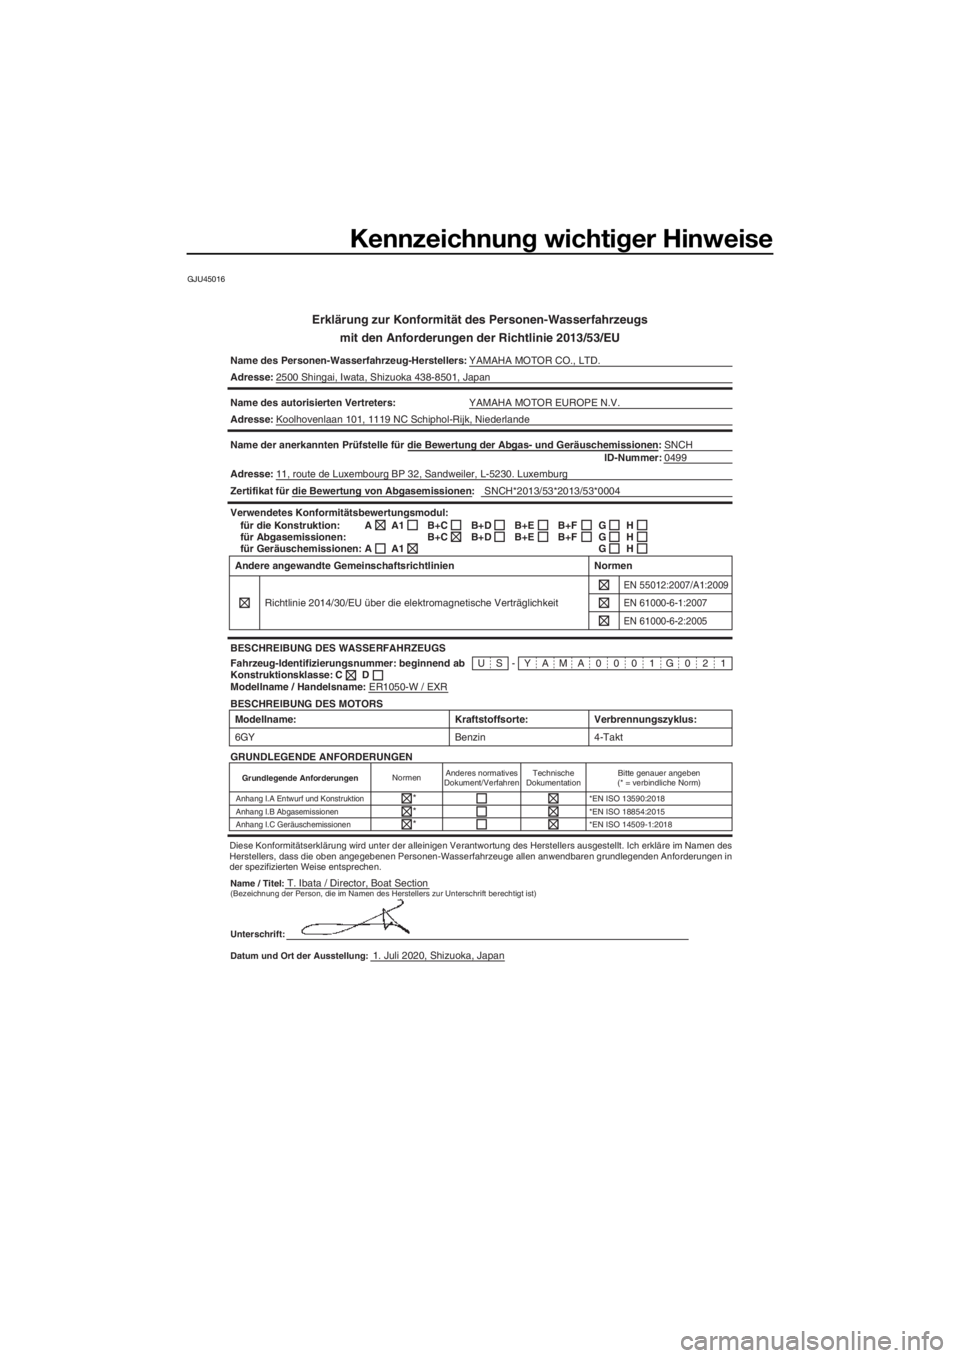 YAMAHA EXR 2021  Betriebsanleitungen (in German) Kennzeichnung wichtiger Hinweise
GJU45016
Erklärung zur Konformität des Personen-Wasserfahrzeugs
mit den Anforderun gen der Richtlinie 2013/53/EU
Name des Personen-Wasserfahrzeug-Herstellers: YAMAHA